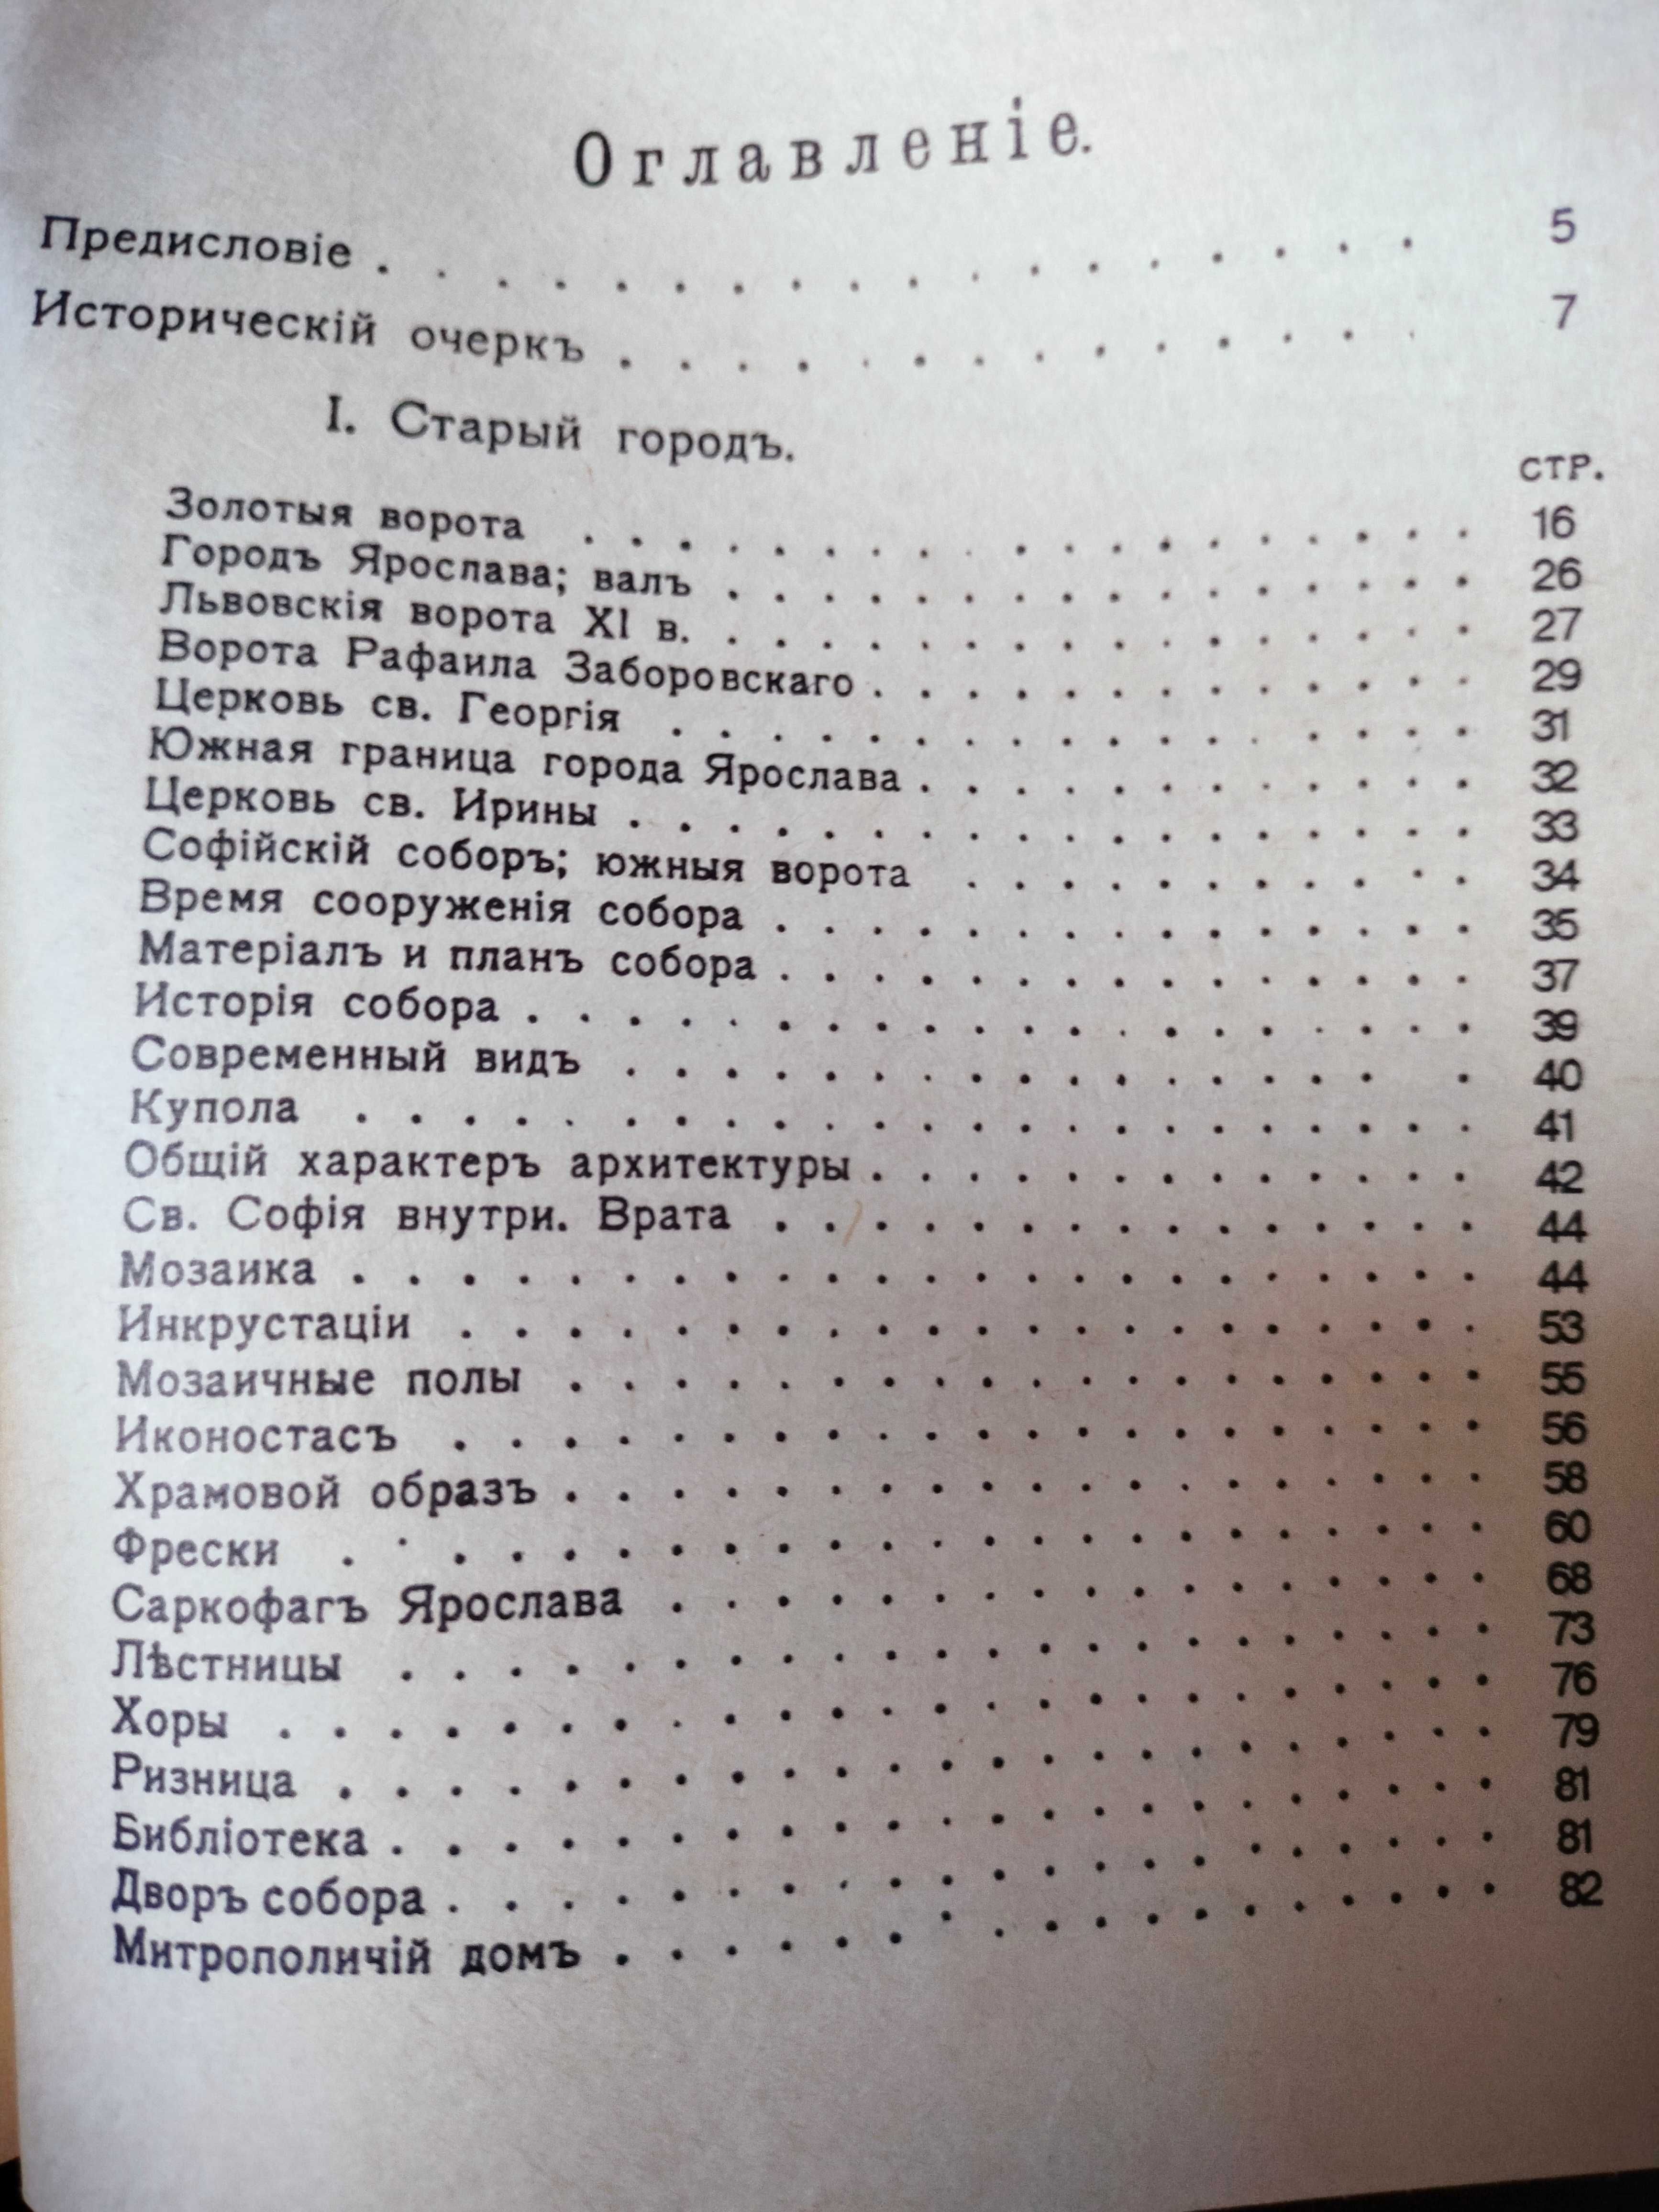 Киев, Путеводитель, репринтне відтворення видання 1917 року